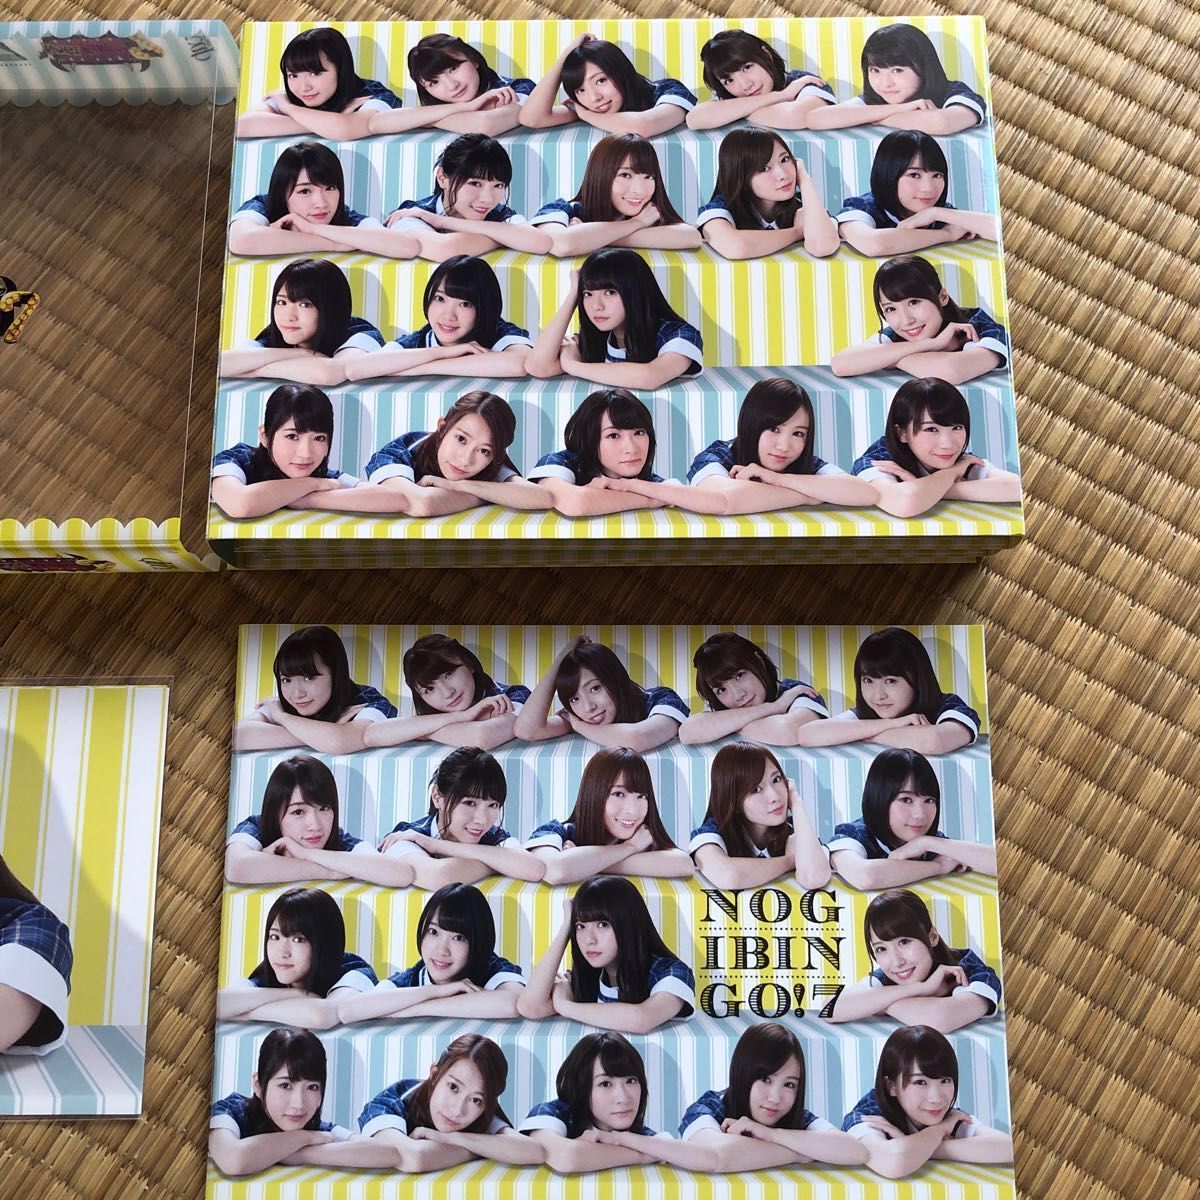 初回限定盤！乃木坂46 4DVD/NOGIBINGO! 7 DVD-BOX ポストカード 齋藤飛鳥